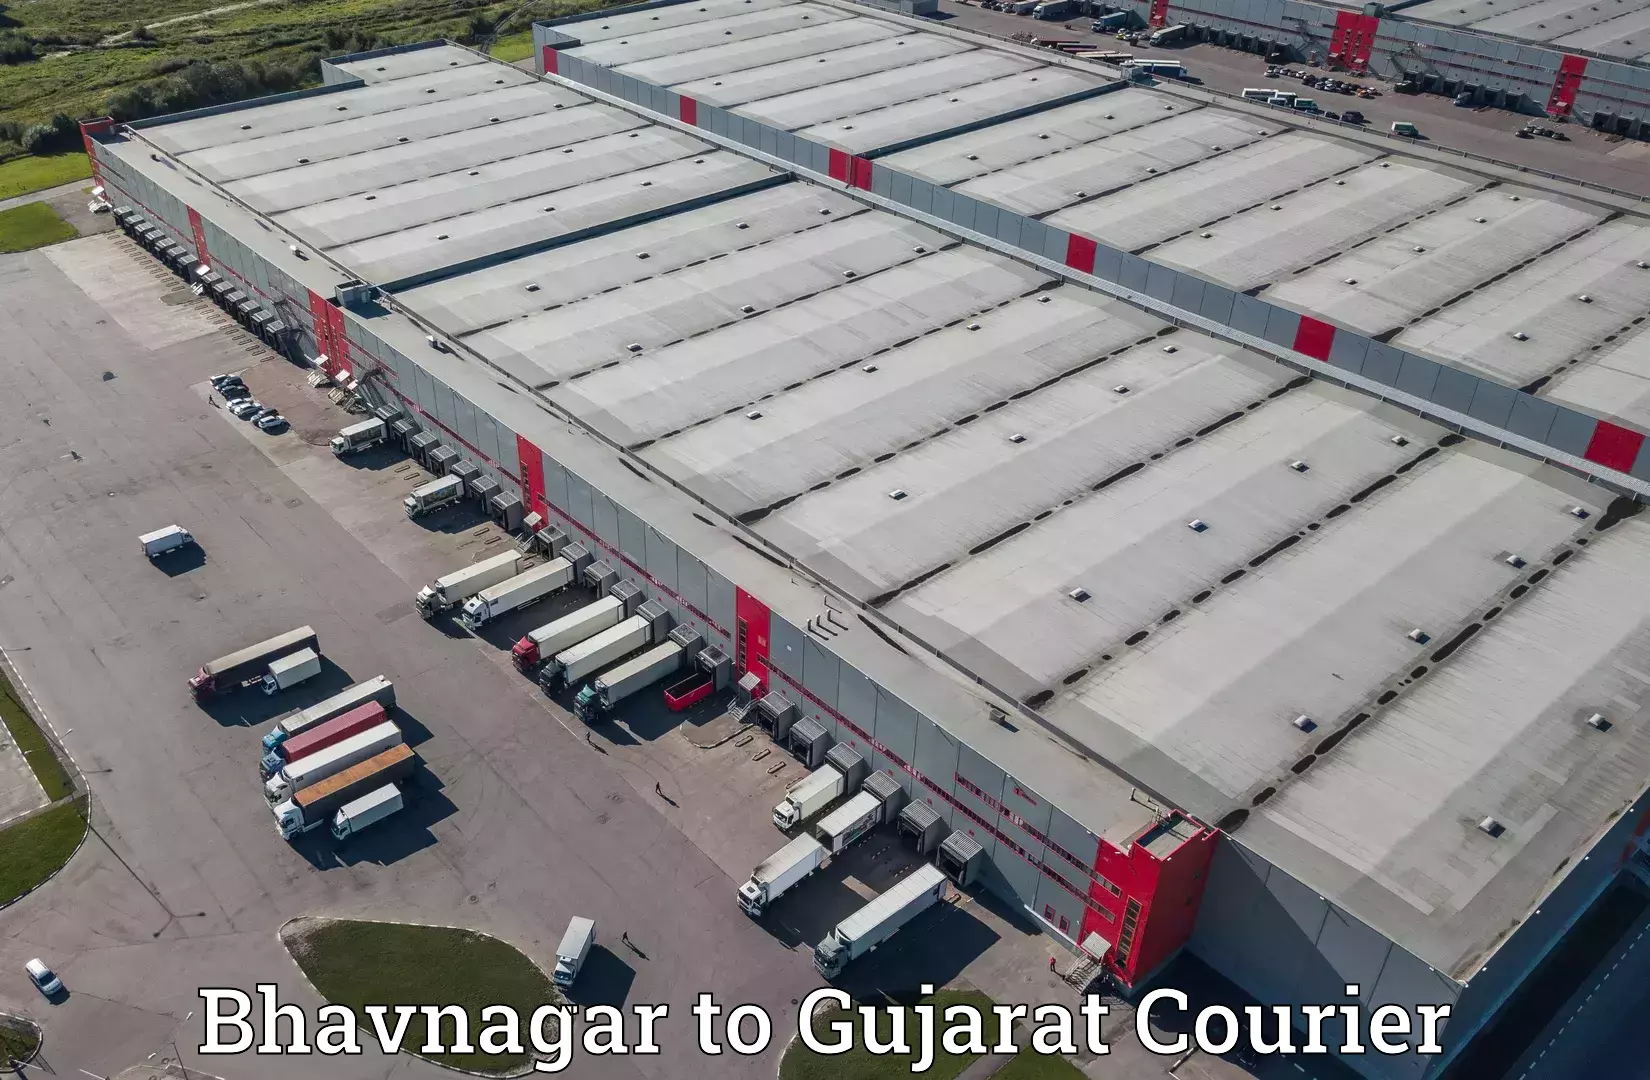 Courier service comparison in Bhavnagar to Gujarat